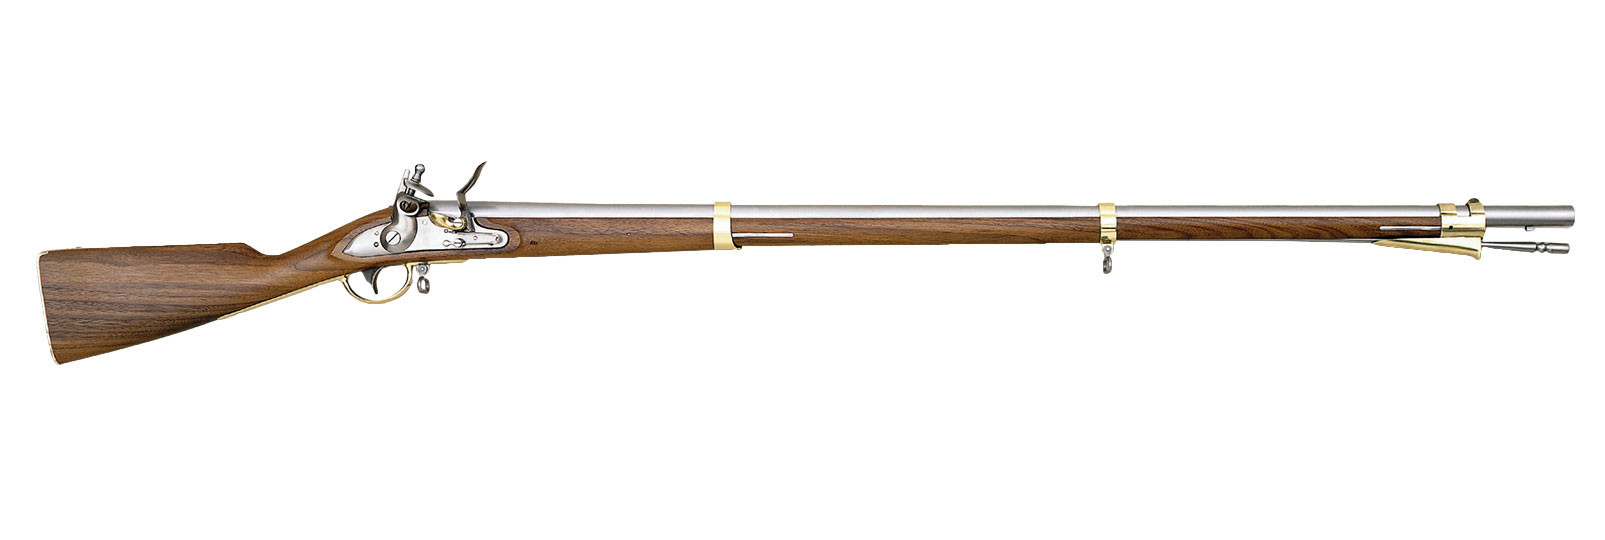 Fucile 1798 Austrian infantry